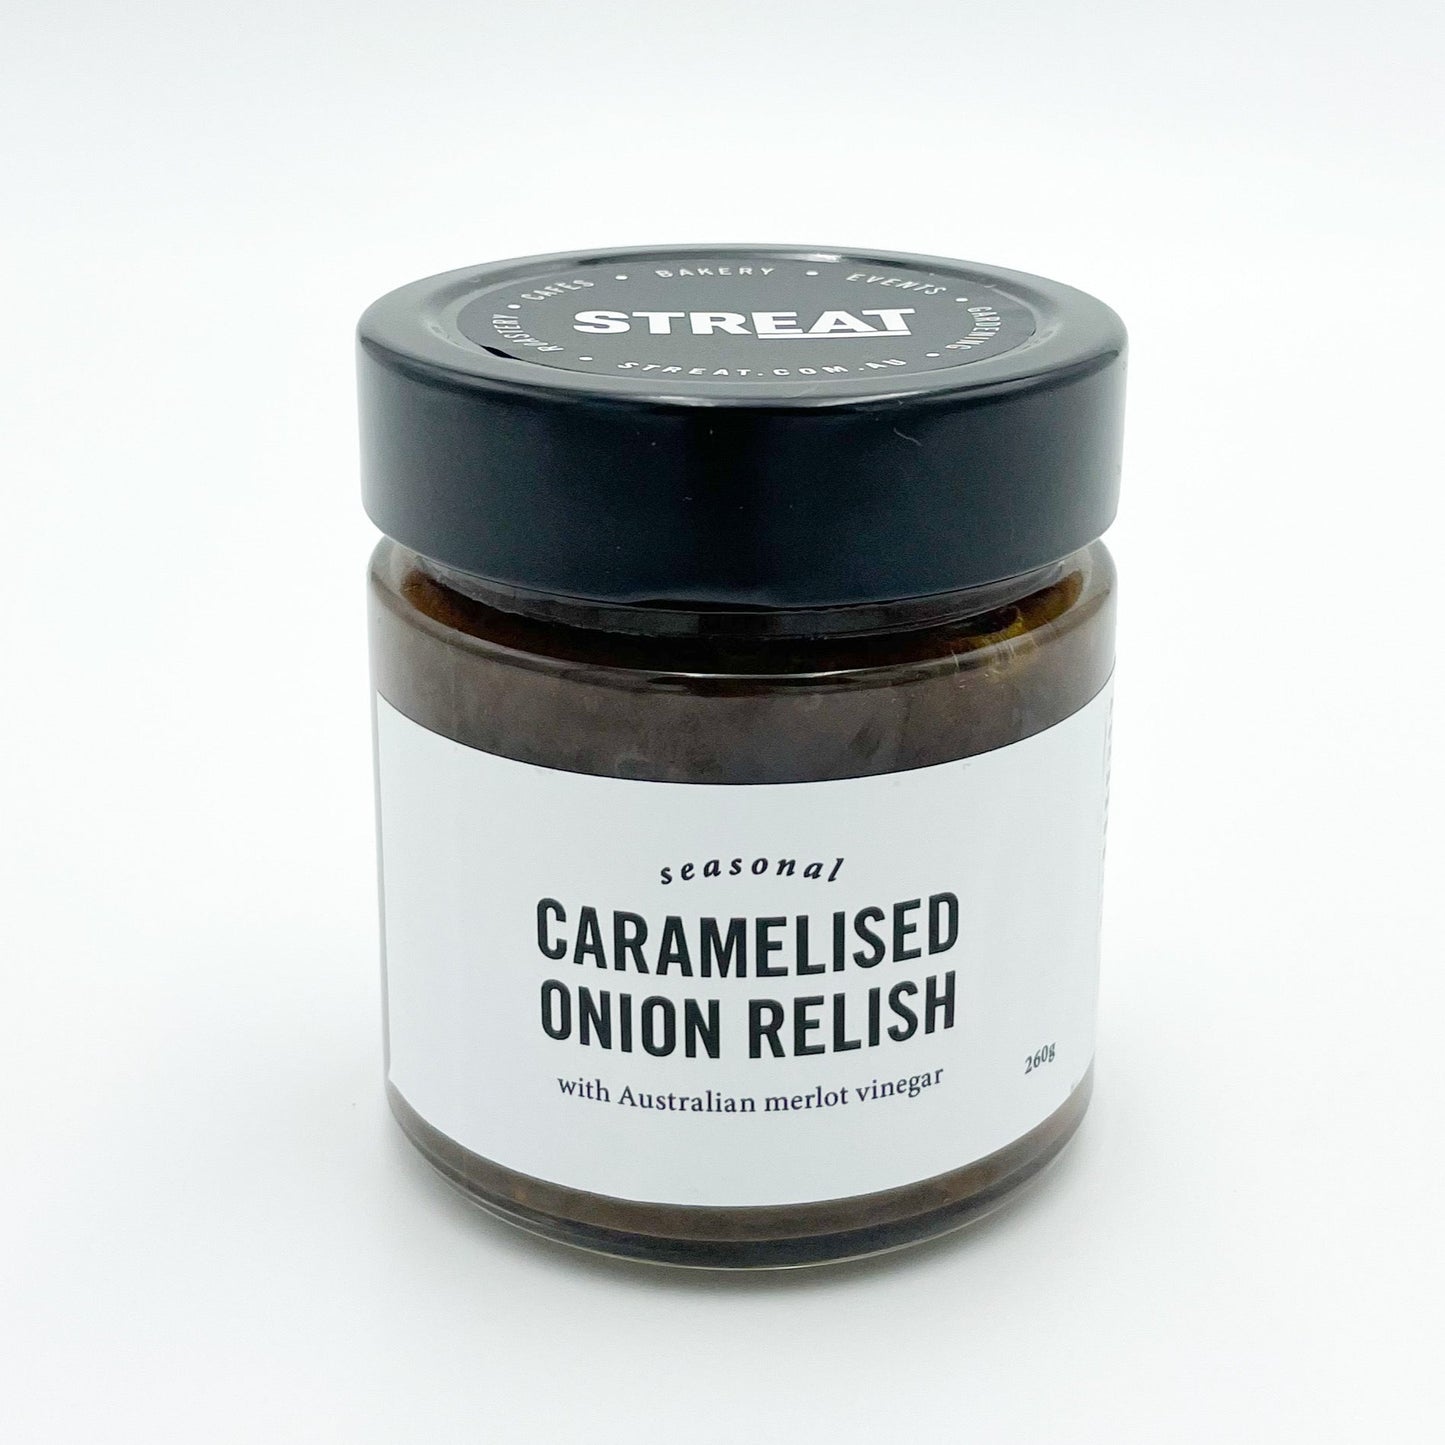 Caramelised onion relish